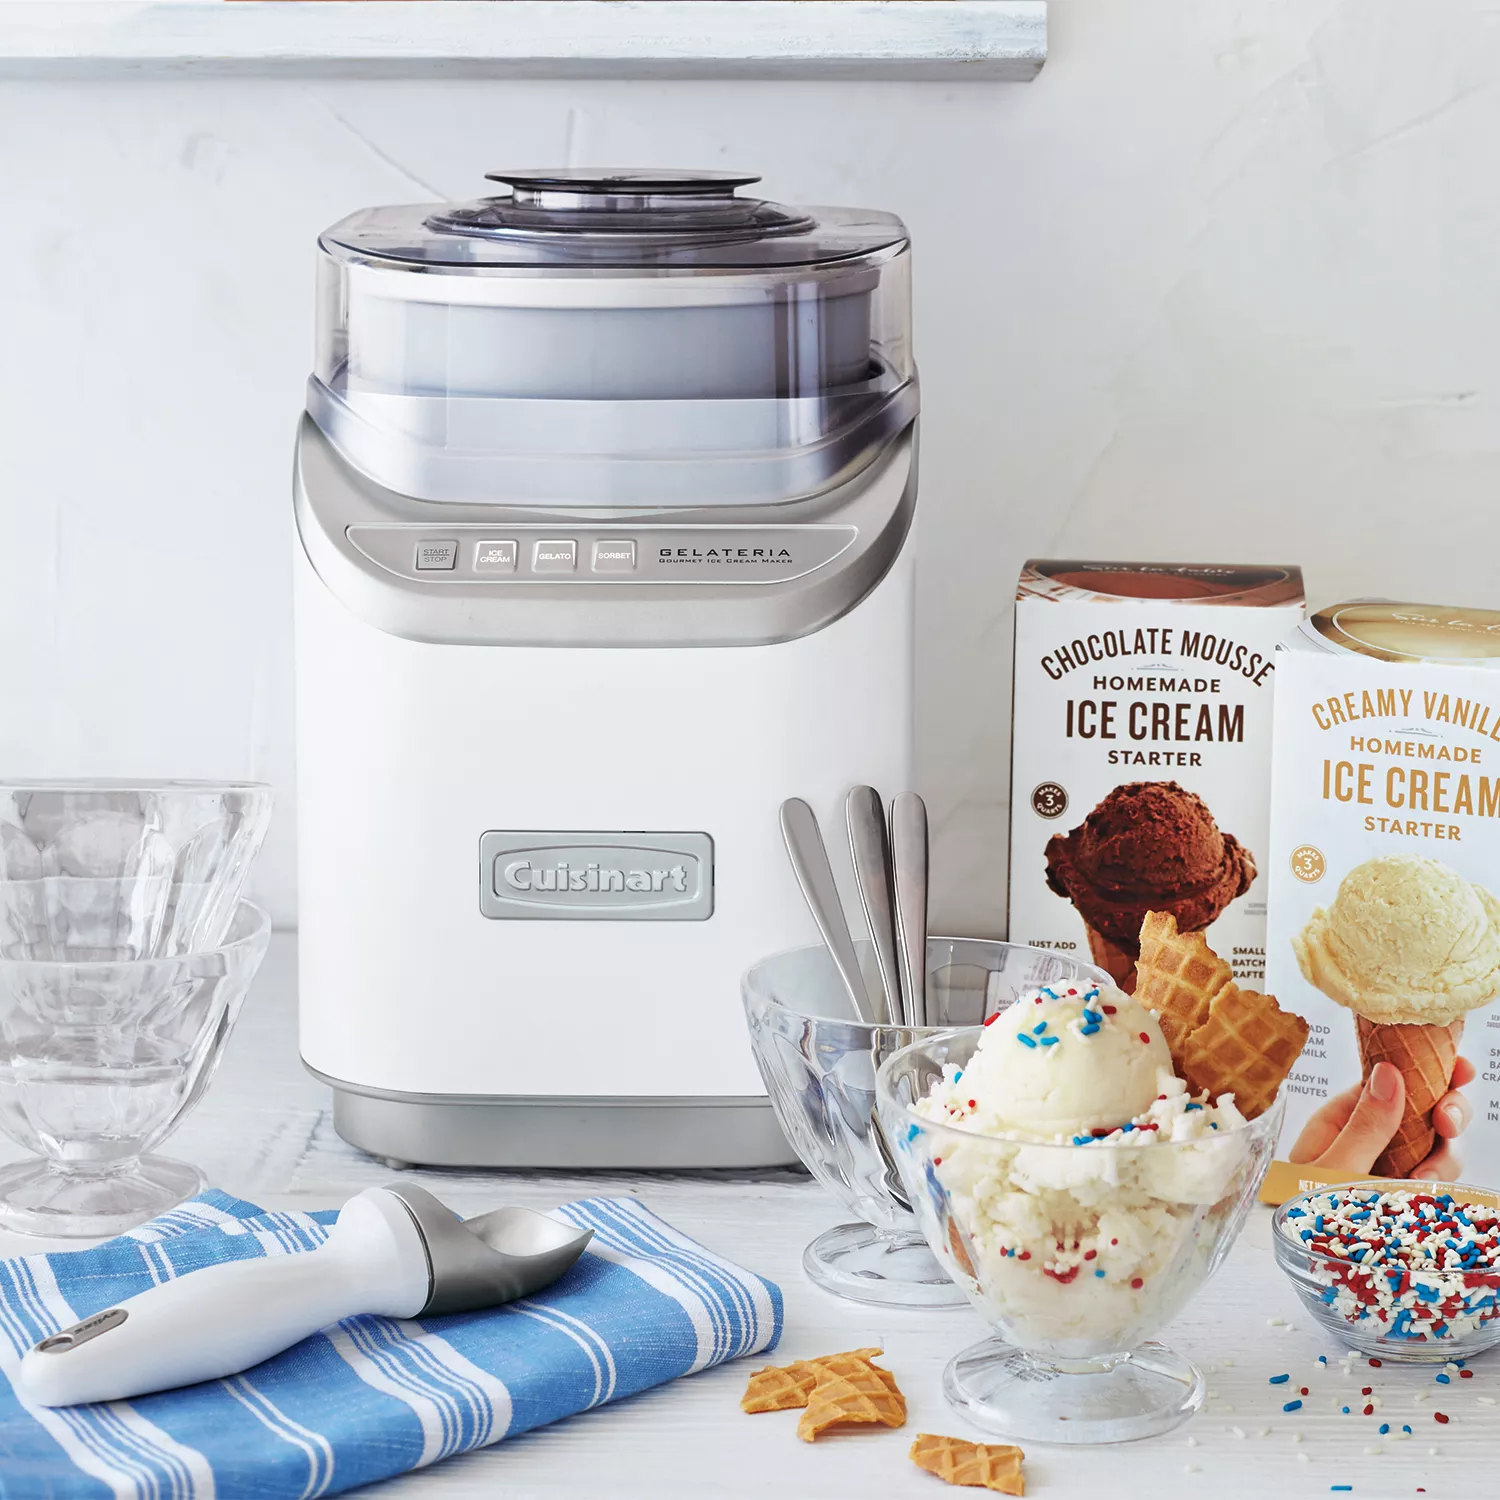 Gelateria Frozen Yogurt, Ice Cream, Gelato and Sorbet Maker